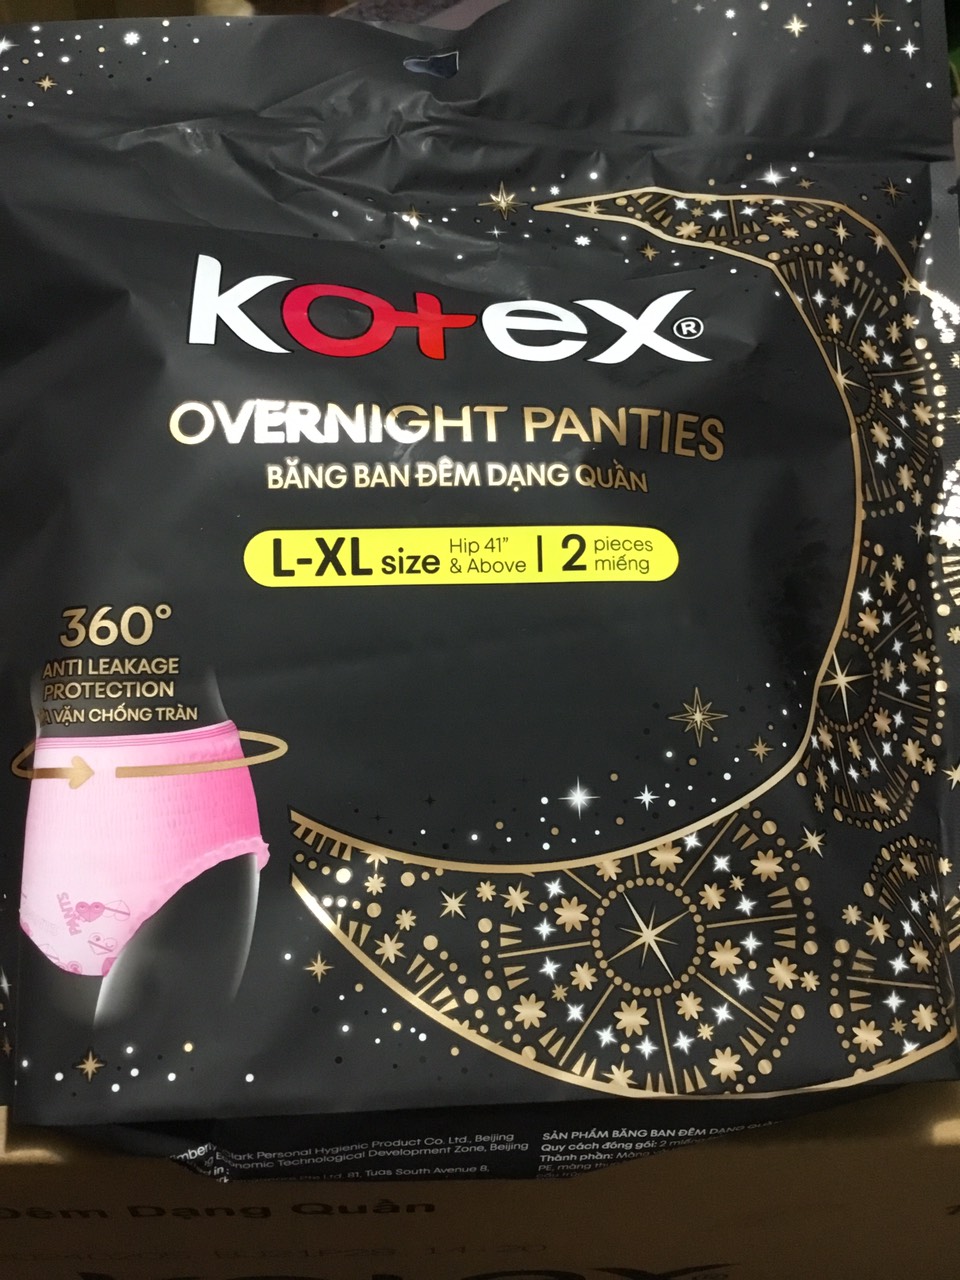 Combo 4 Gói Băng Vệ Sinh Kotex đêm dạng quần vừa vặn chống tràn 360 size  L-XL (2 miếng/gói)-HSD luôn mới